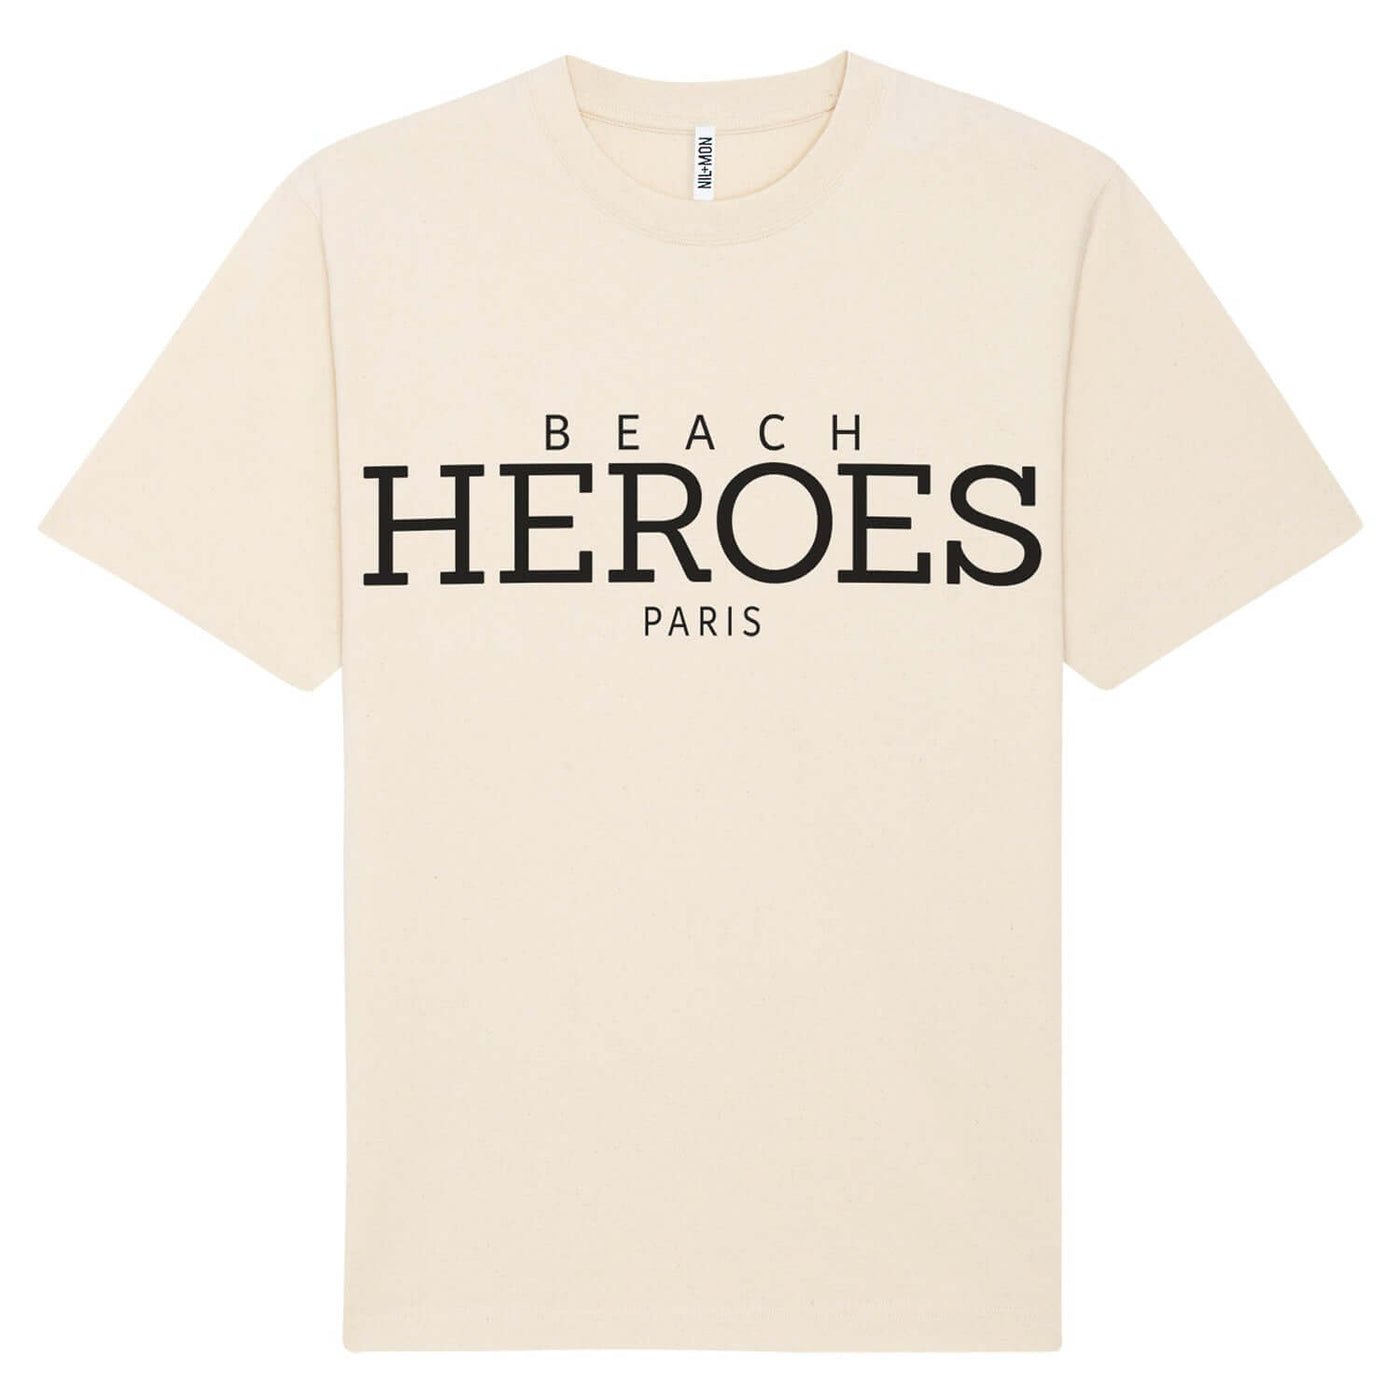 XXL Beach Shirt "Heroes" - creme